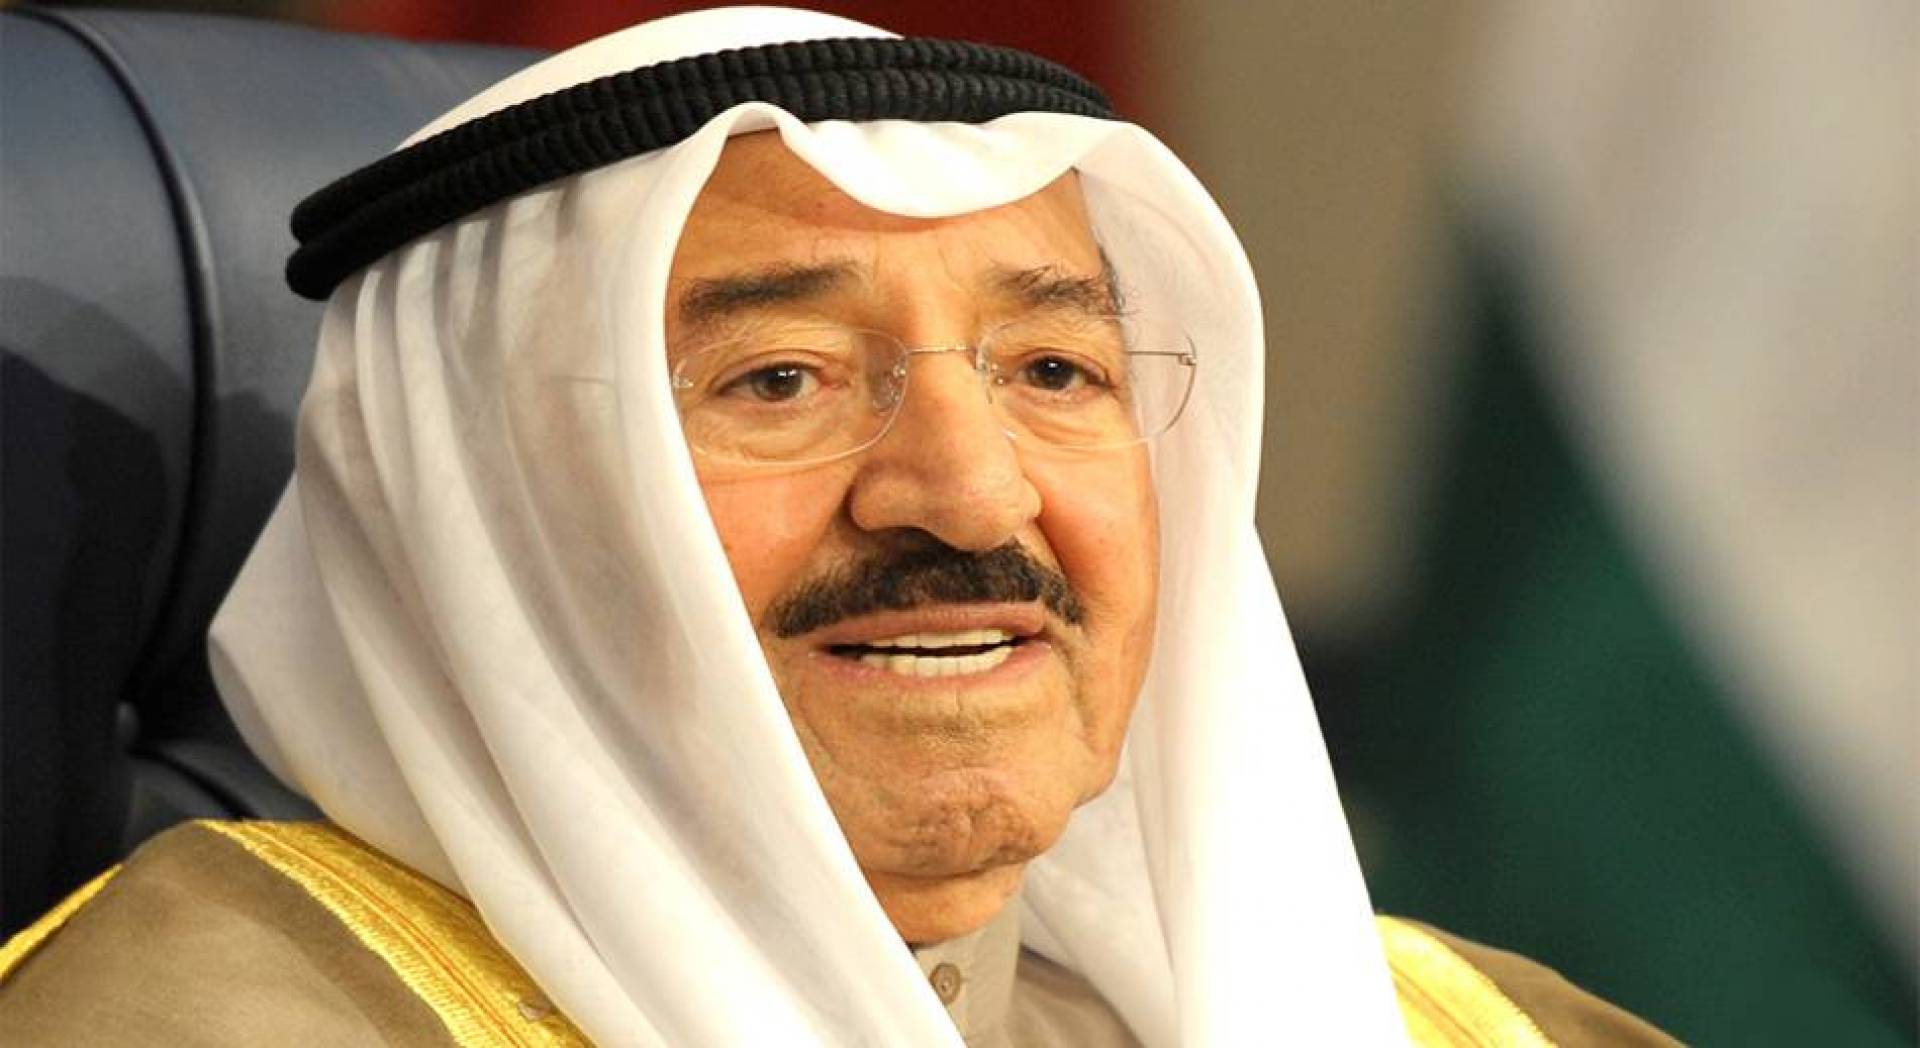 الديوان الأميري الكويتي: الأمير يتعافى من العارض الصحي